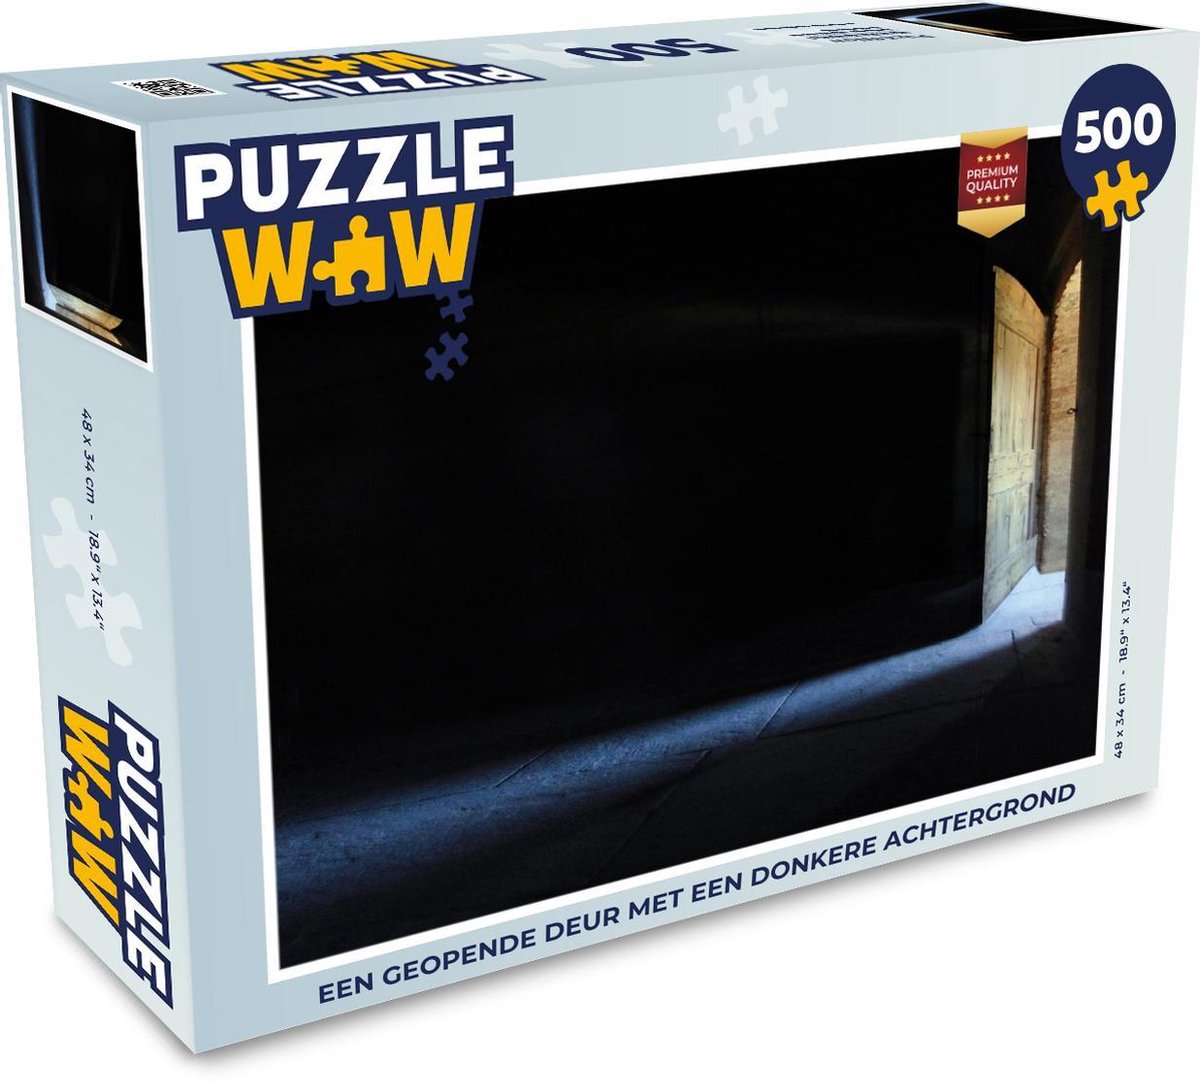 Afbeelding van product Puzzel 500 stukjes Deur - Een geopende deur met een donkere achtergrond - PuzzleWow heeft +100000 puzzels